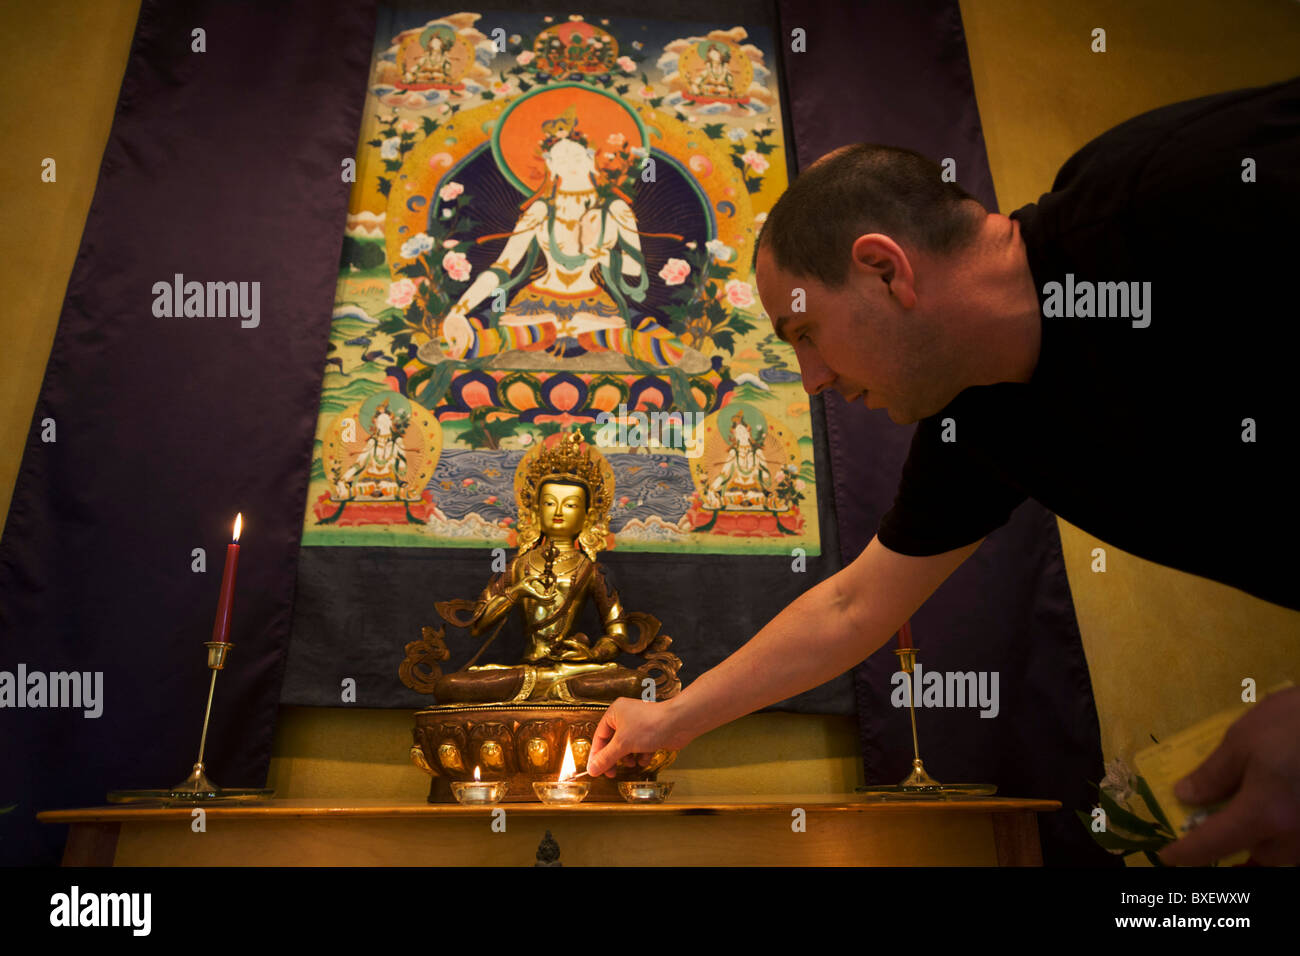 Le moine bouddhiste Nagasiddhi s'allume les bougies dans la salle de méditation au centre de retraite bouddhiste Rivendell, East Sussex, Angleterre. Banque D'Images